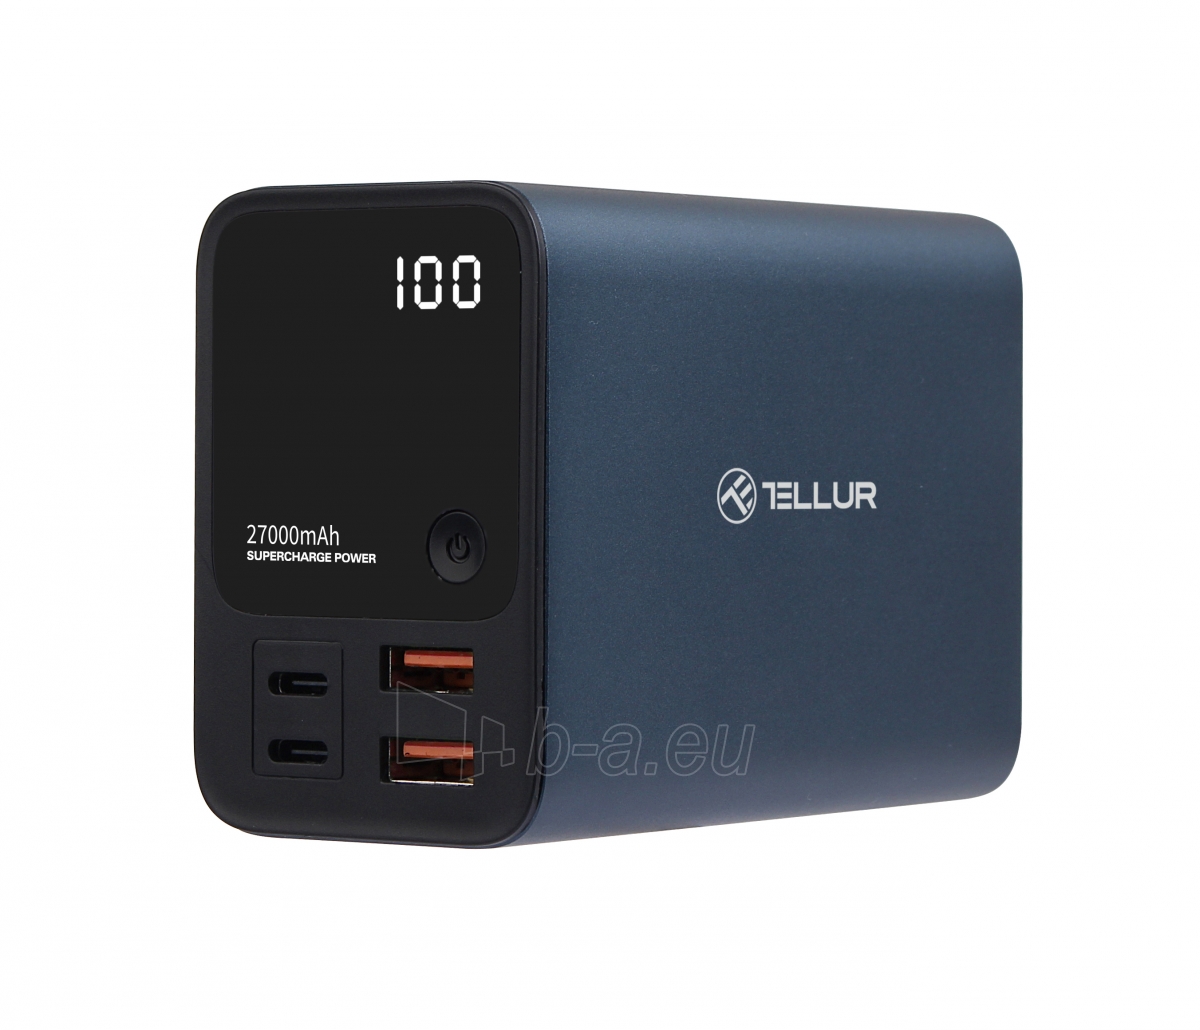 Išorinė baterija Tellur Power Bank Ultra Pro PD903 27000mAh BLue paveikslėlis 1 iš 7